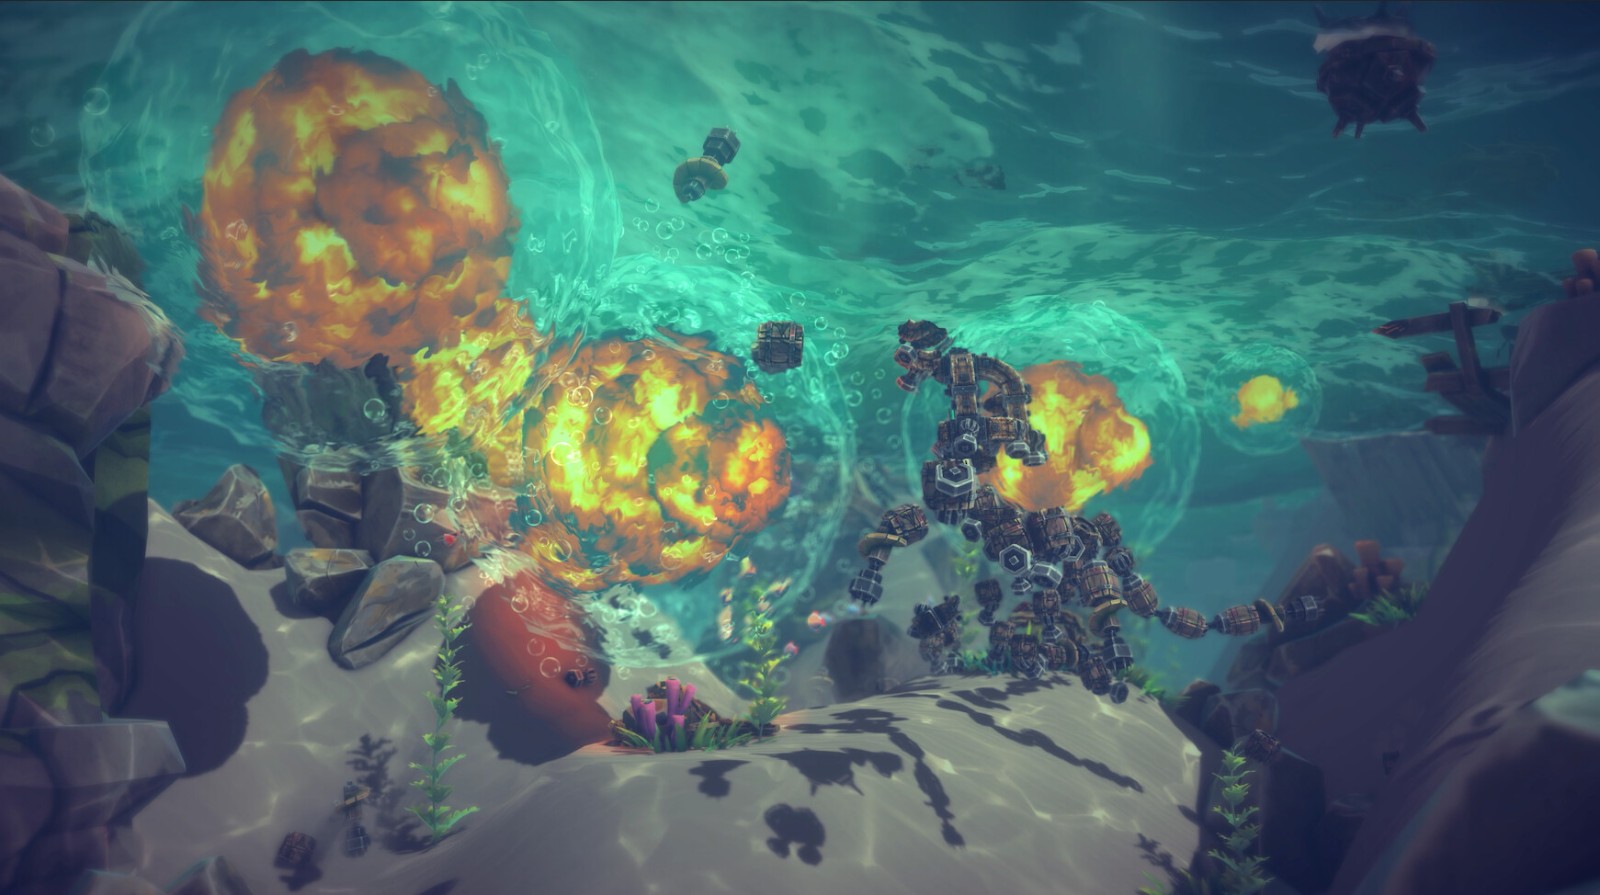 物理修筑游戏《围攻》全新DLC“割裂之海” 5月24日发售